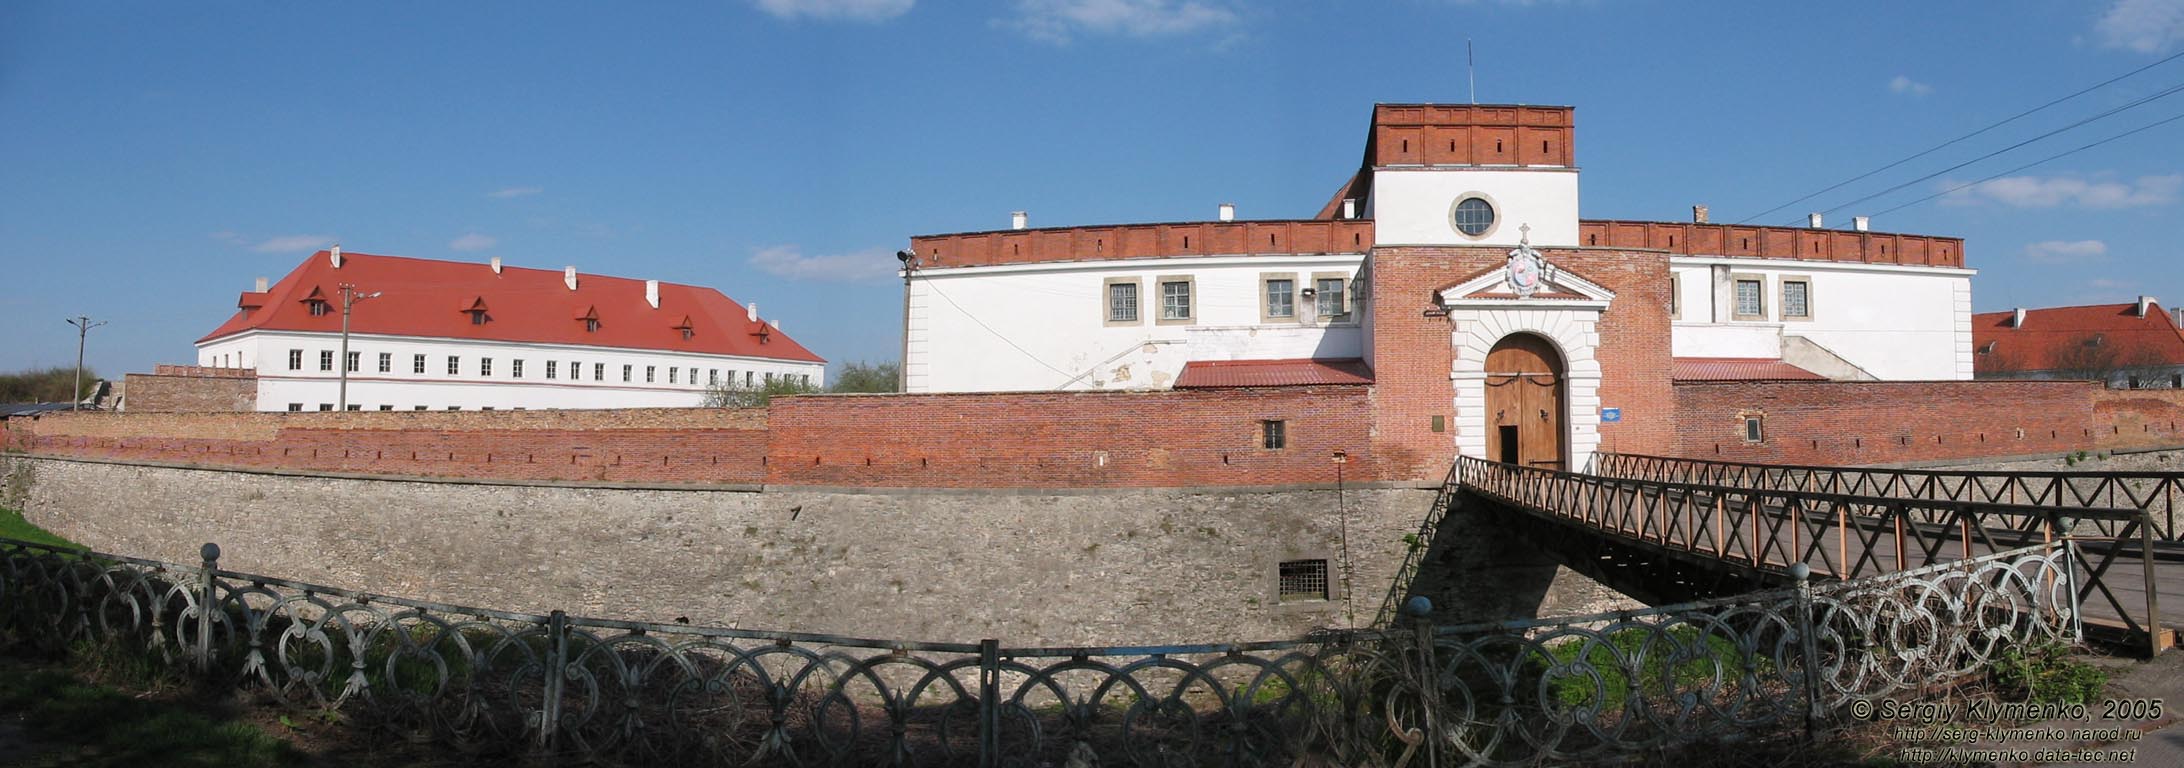 Дубно. Дубенский замок, памятник архитектуры XV-XVII в. Панорама замка.